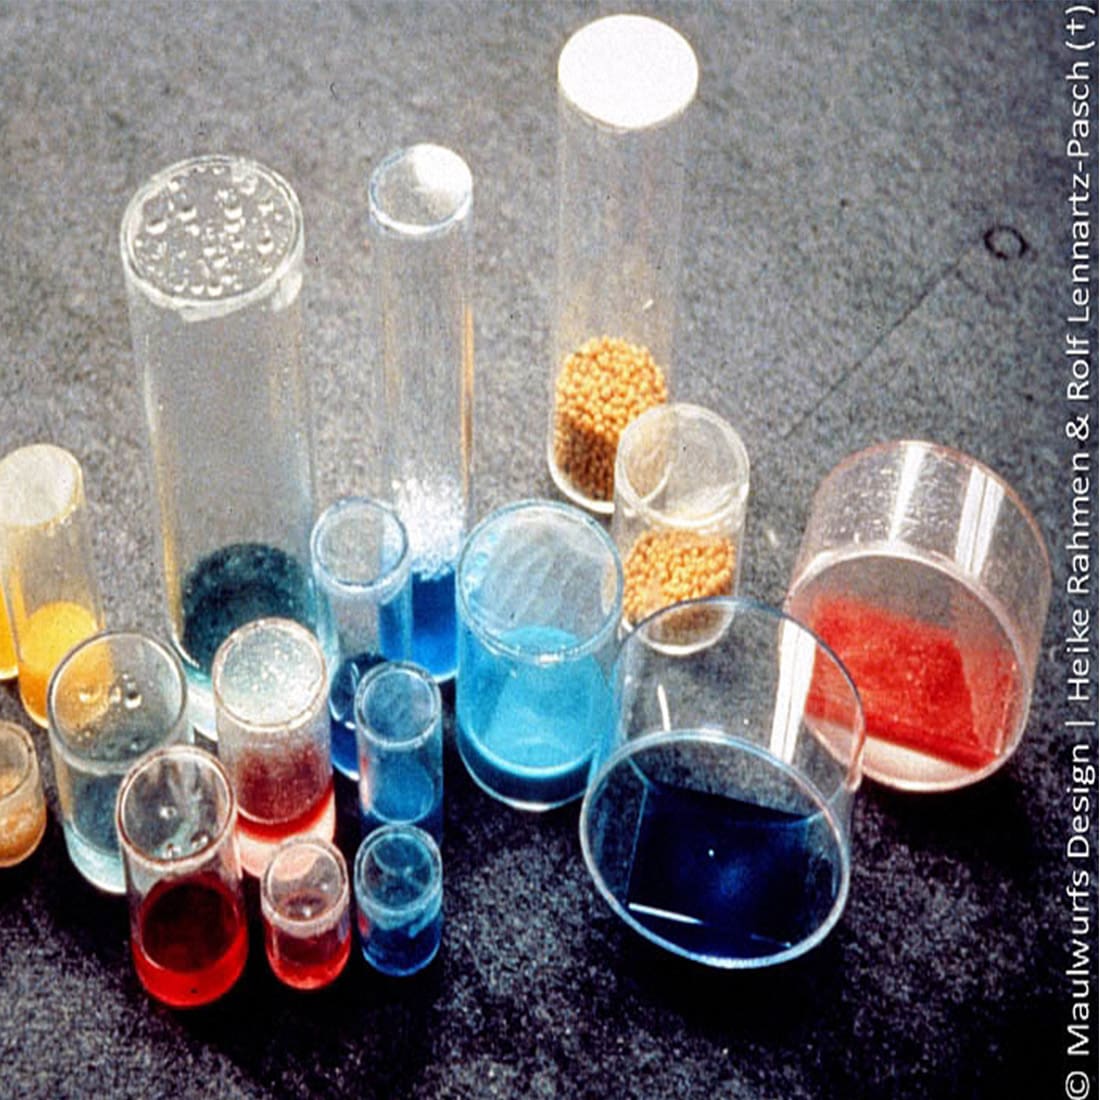 Verschiedene chemische Substanzen in durchsichtigen Laborbehältern in verschiedenen Farben, präsentiert auf einer grauen Oberfläche.